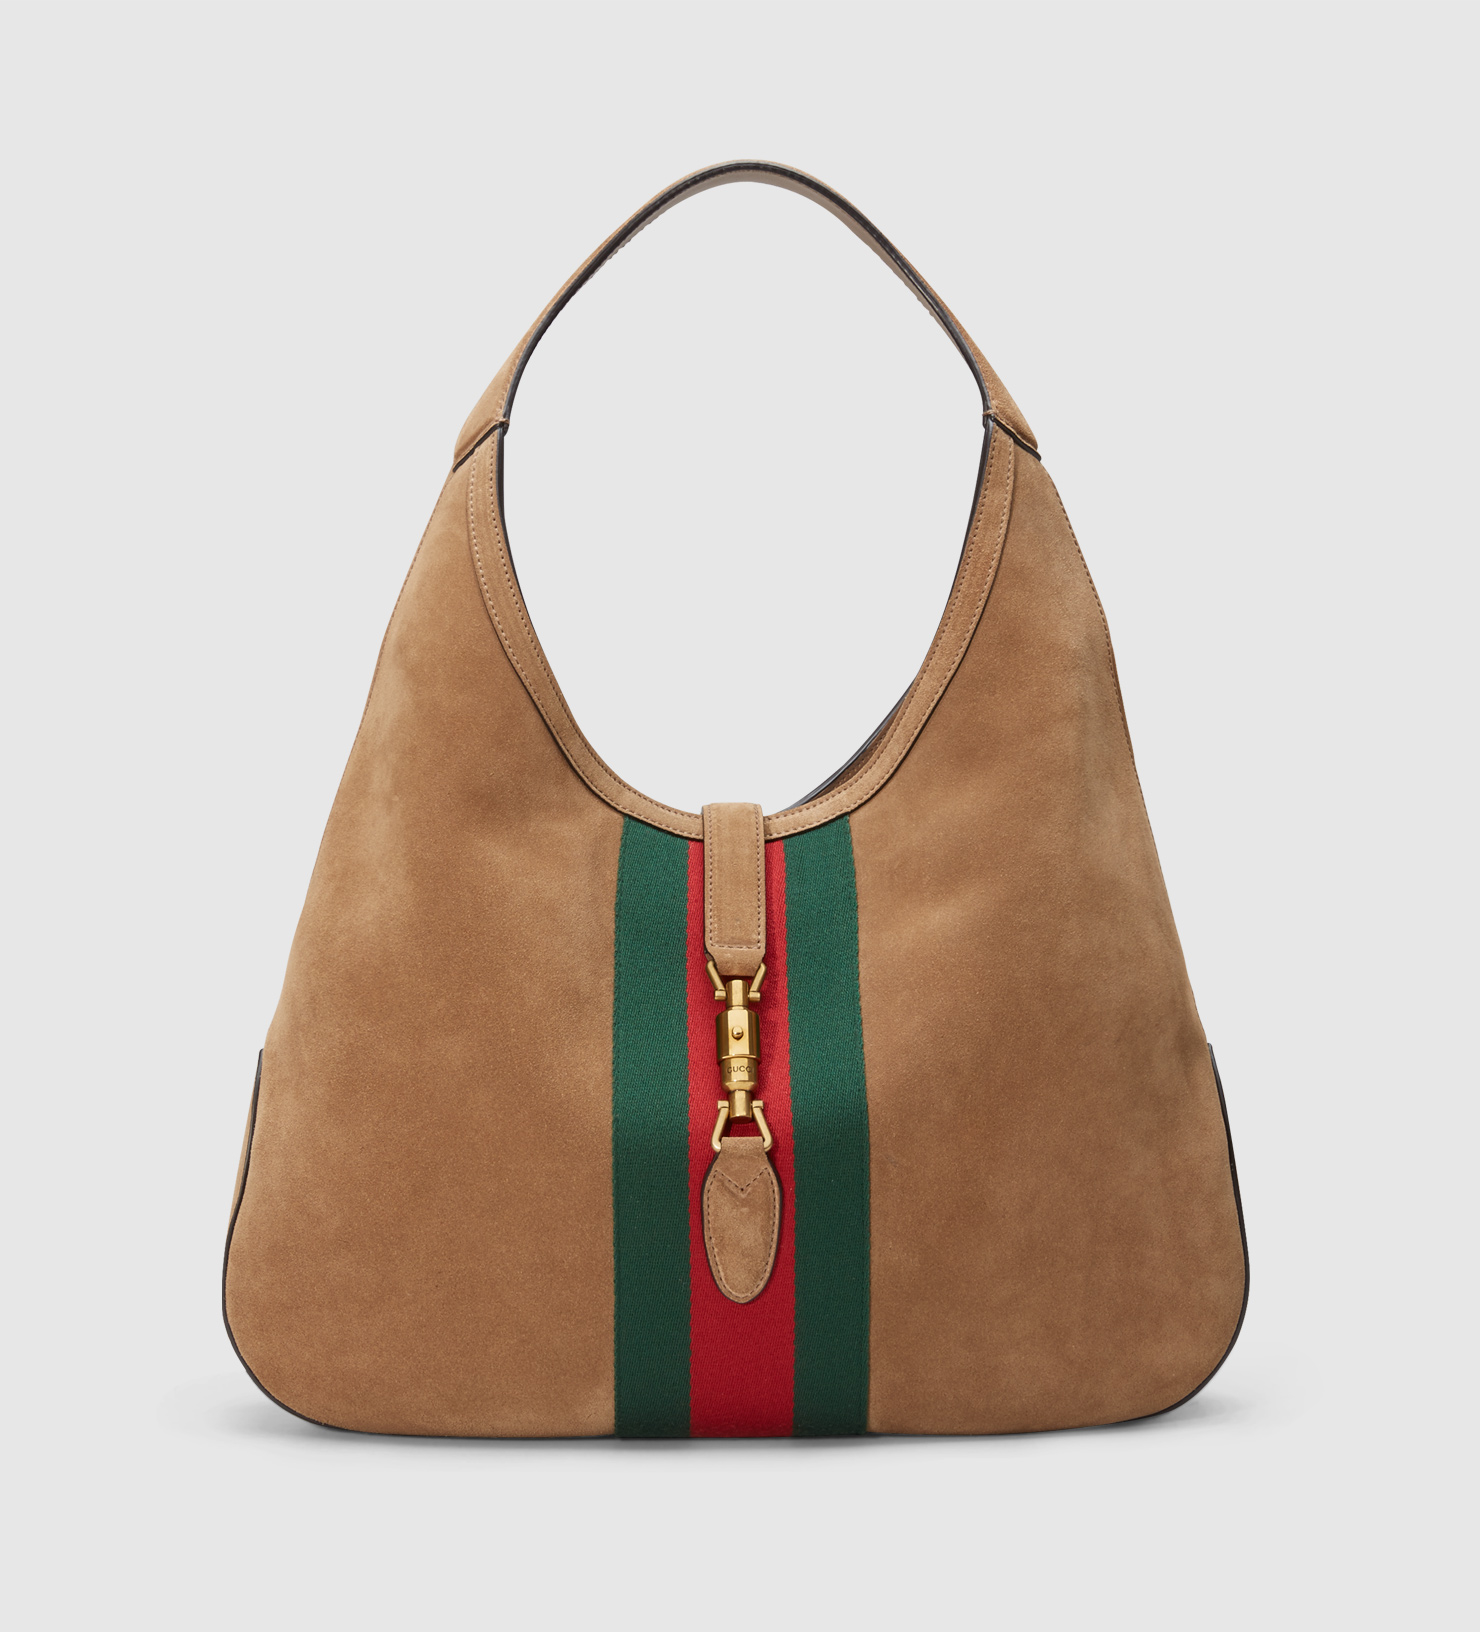 Gucci Women's Hobo Bags